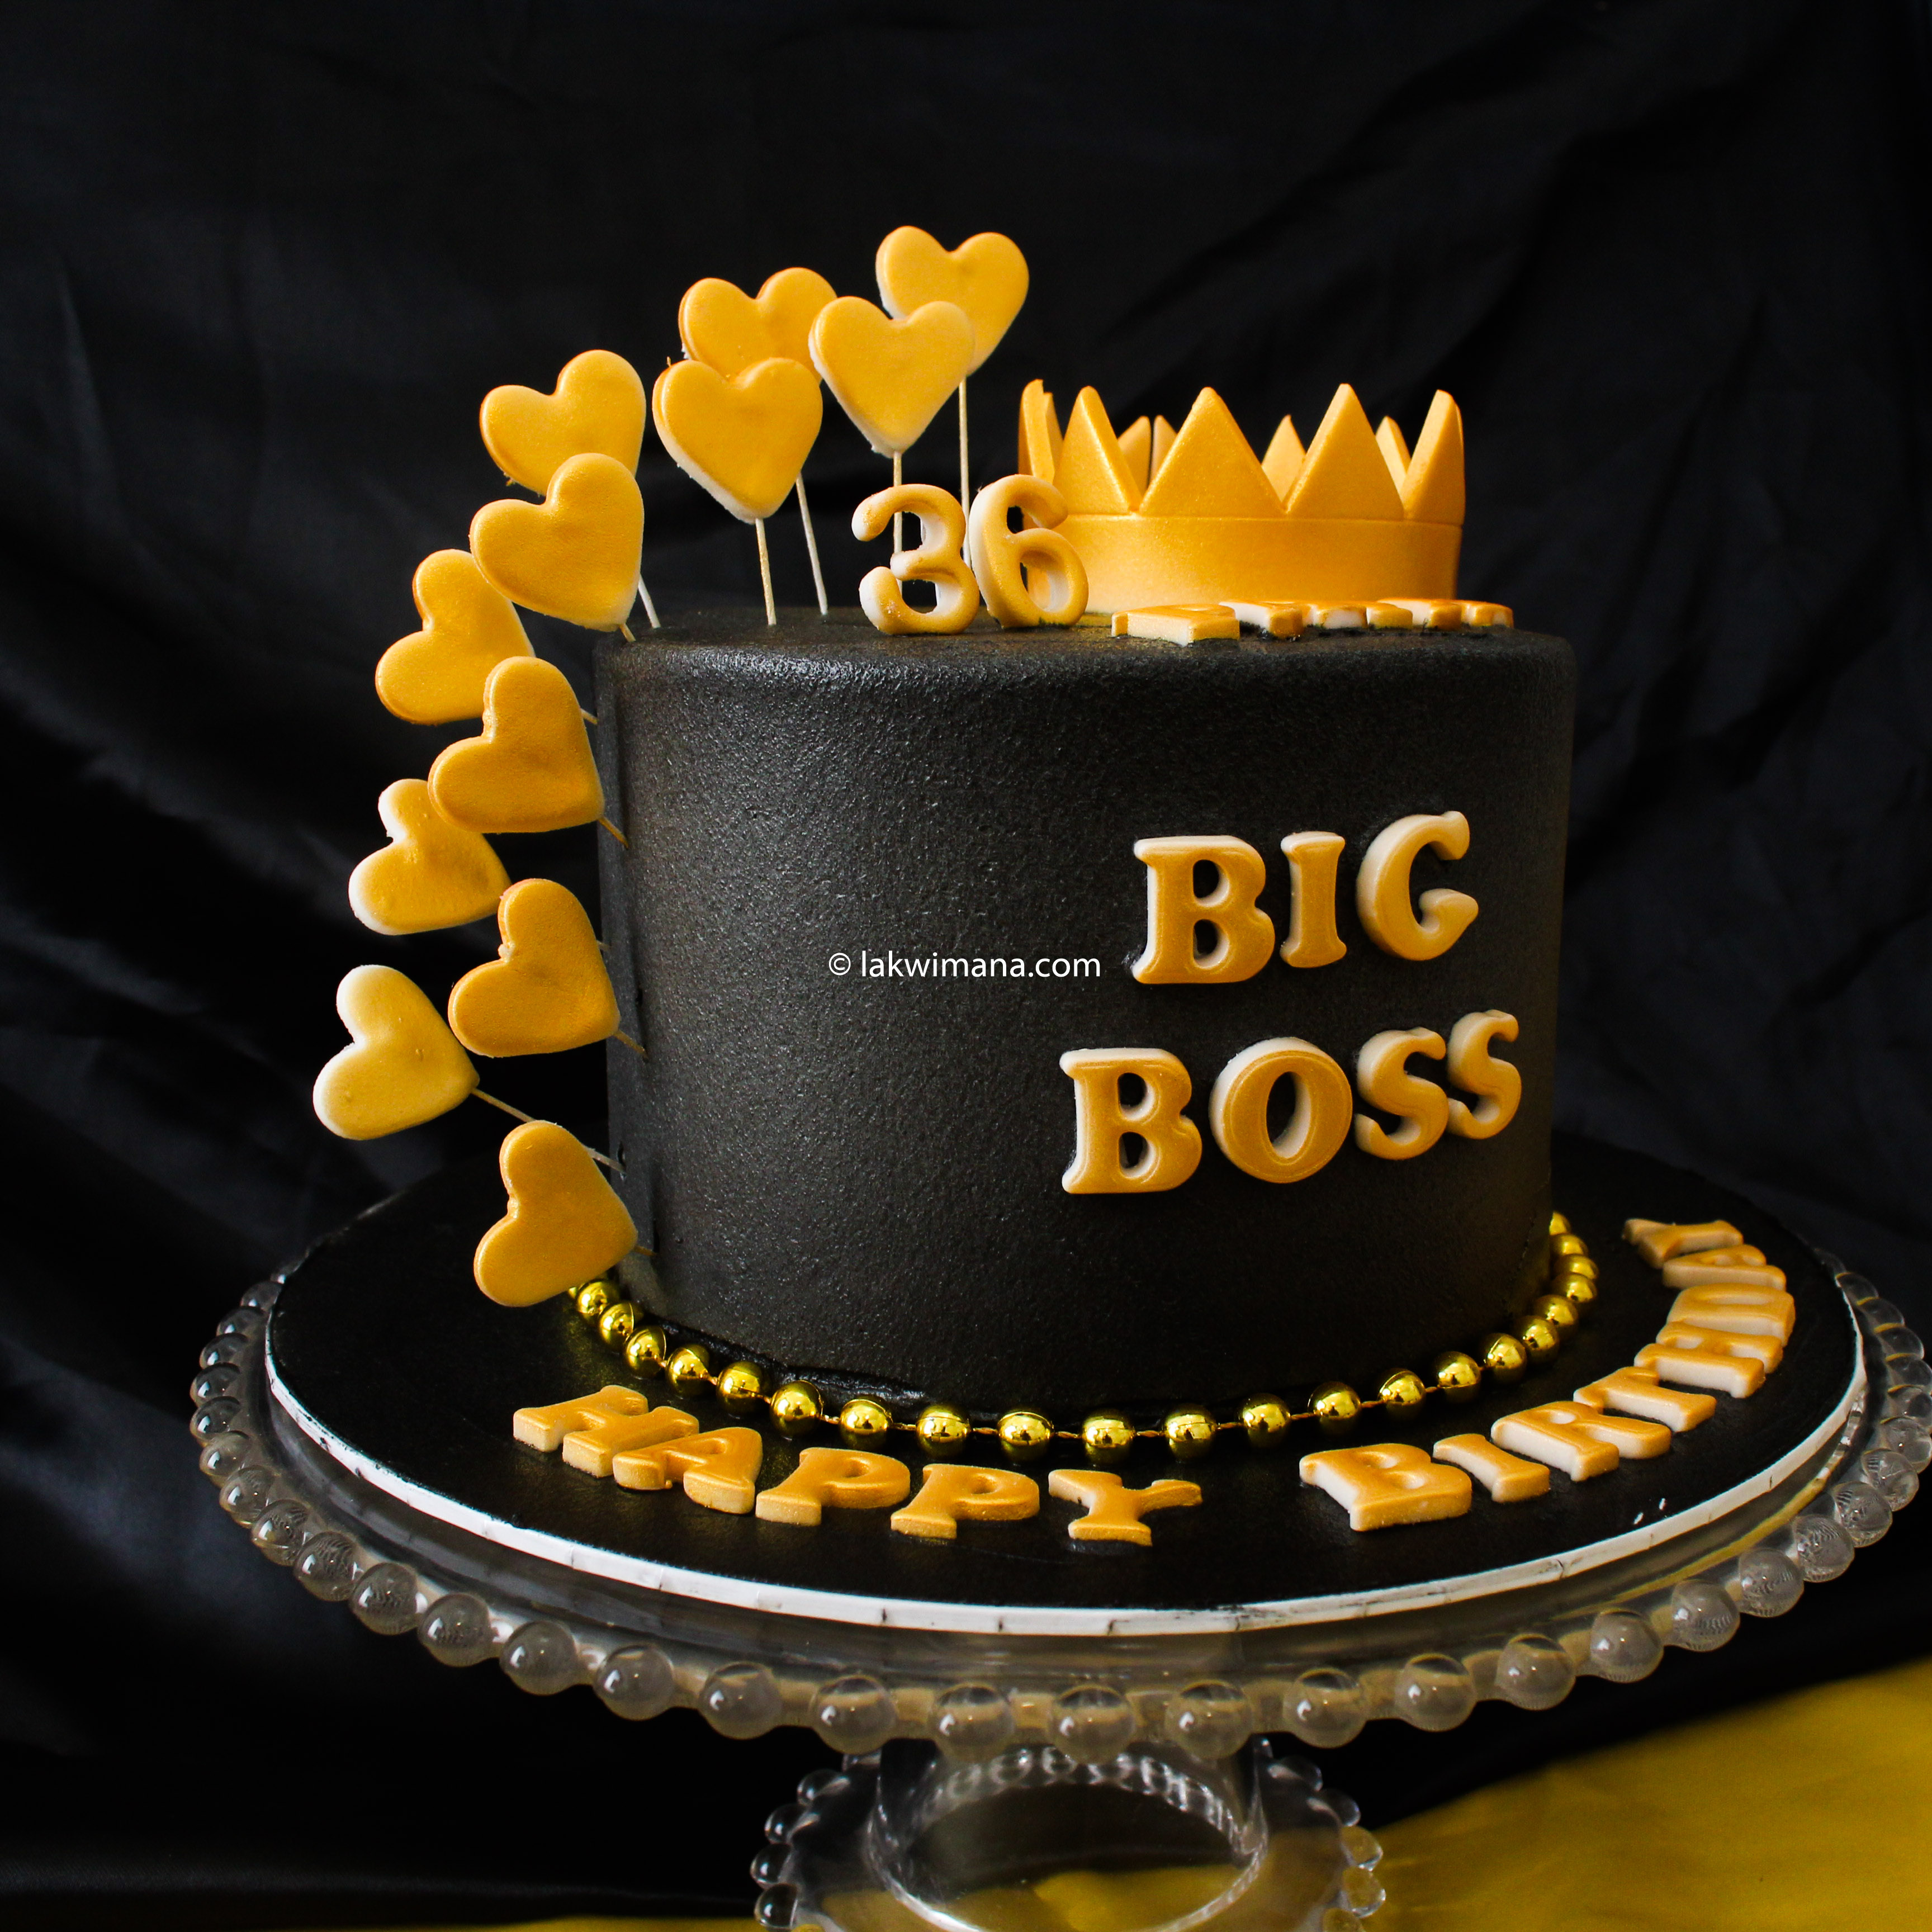 Big Boss Cake, Lakwimana